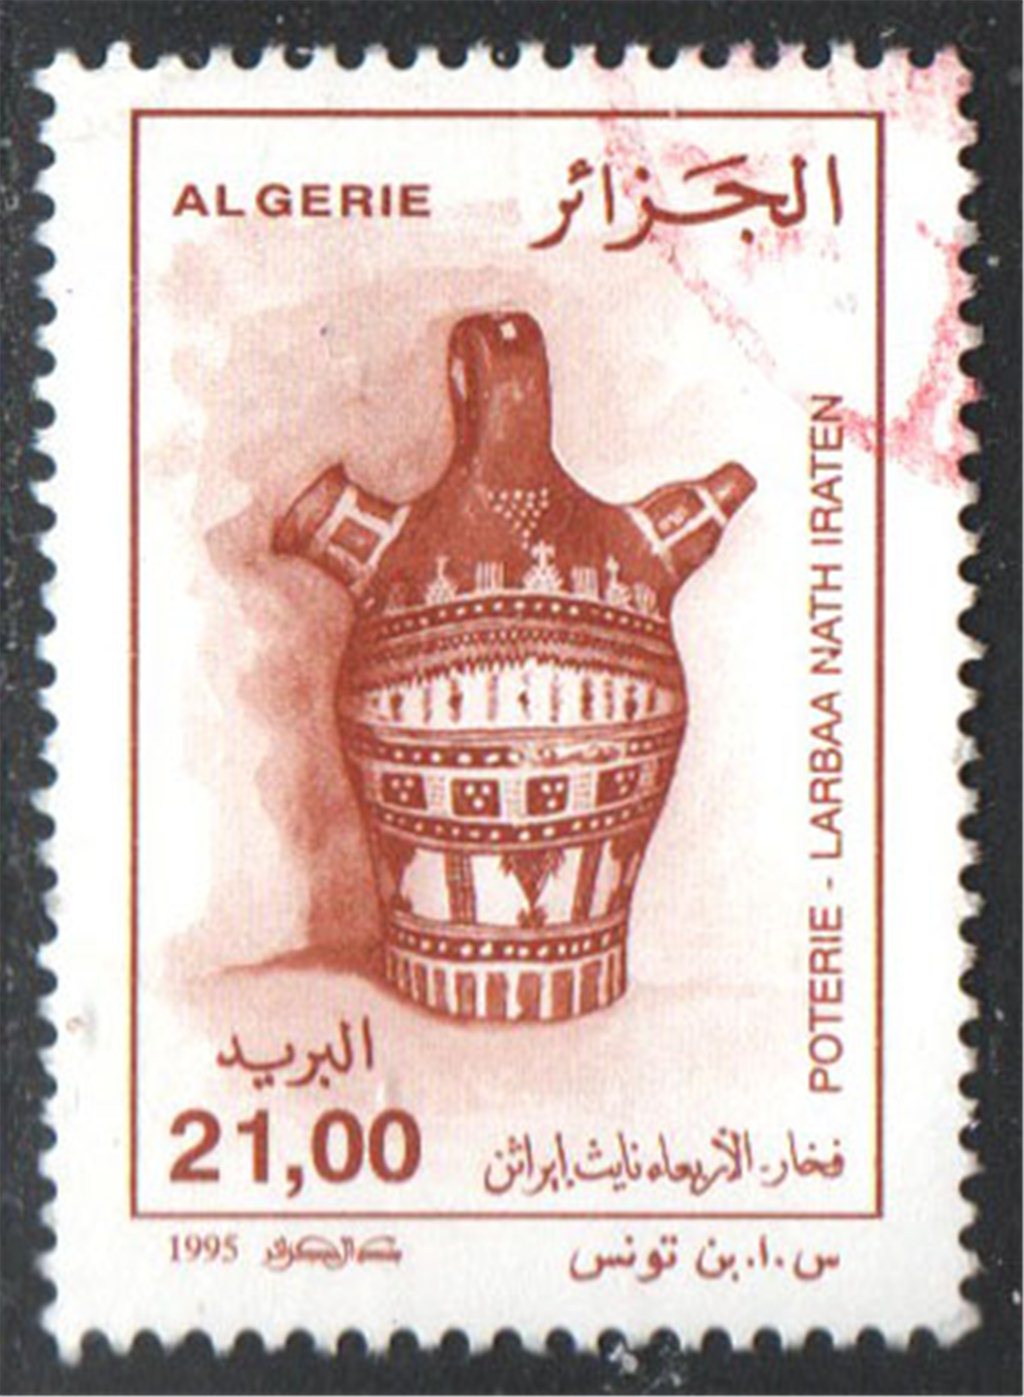 Algeria Scott 1057 Used - Click Image to Close